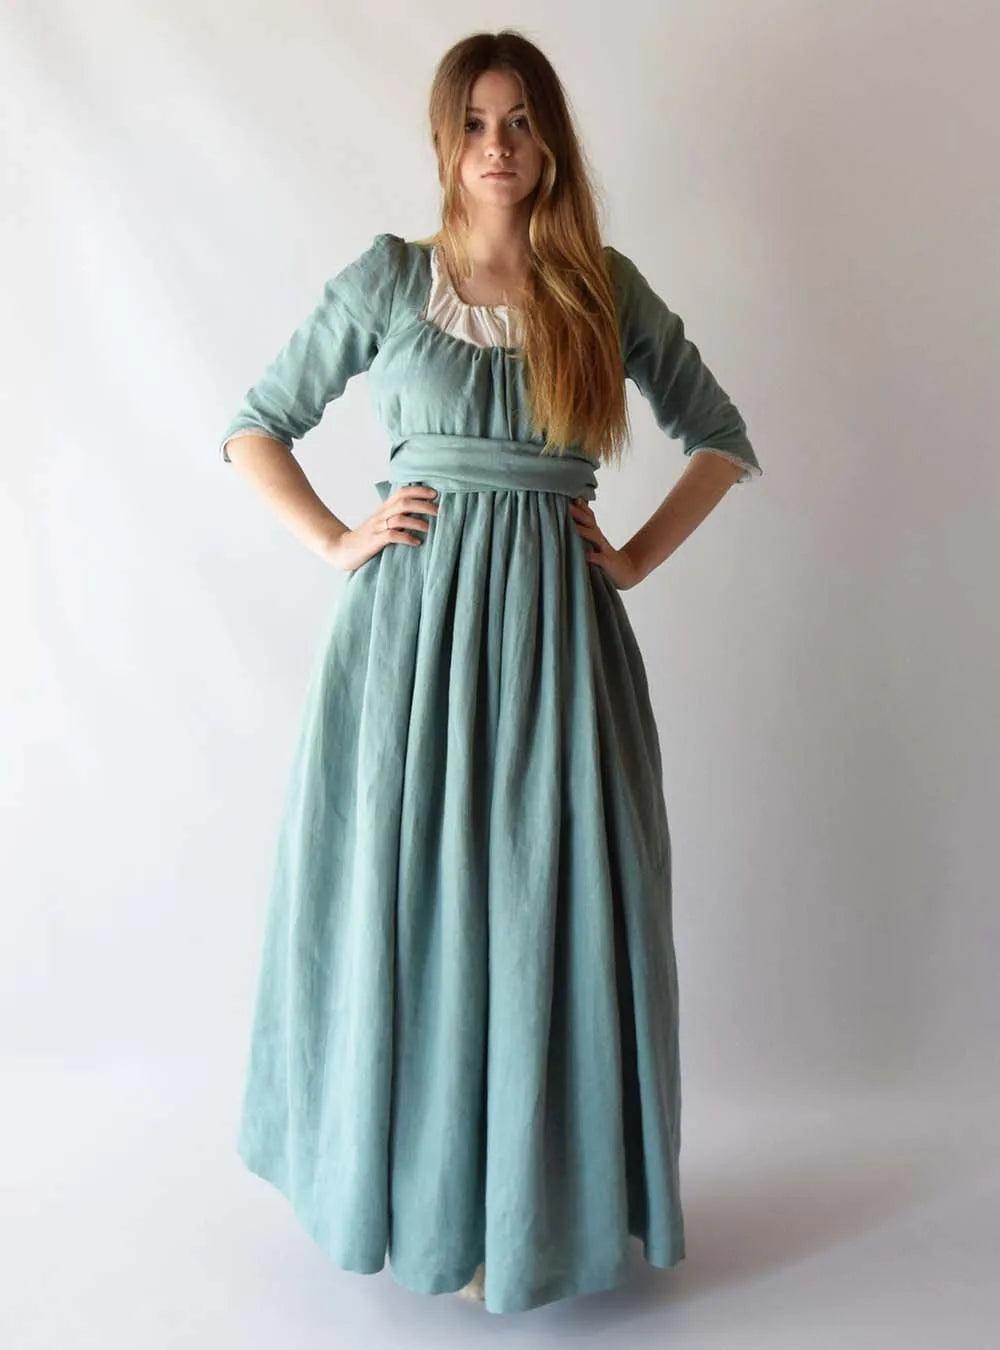 Regency Dress in Almond Green Linen - Atelier Serraspina